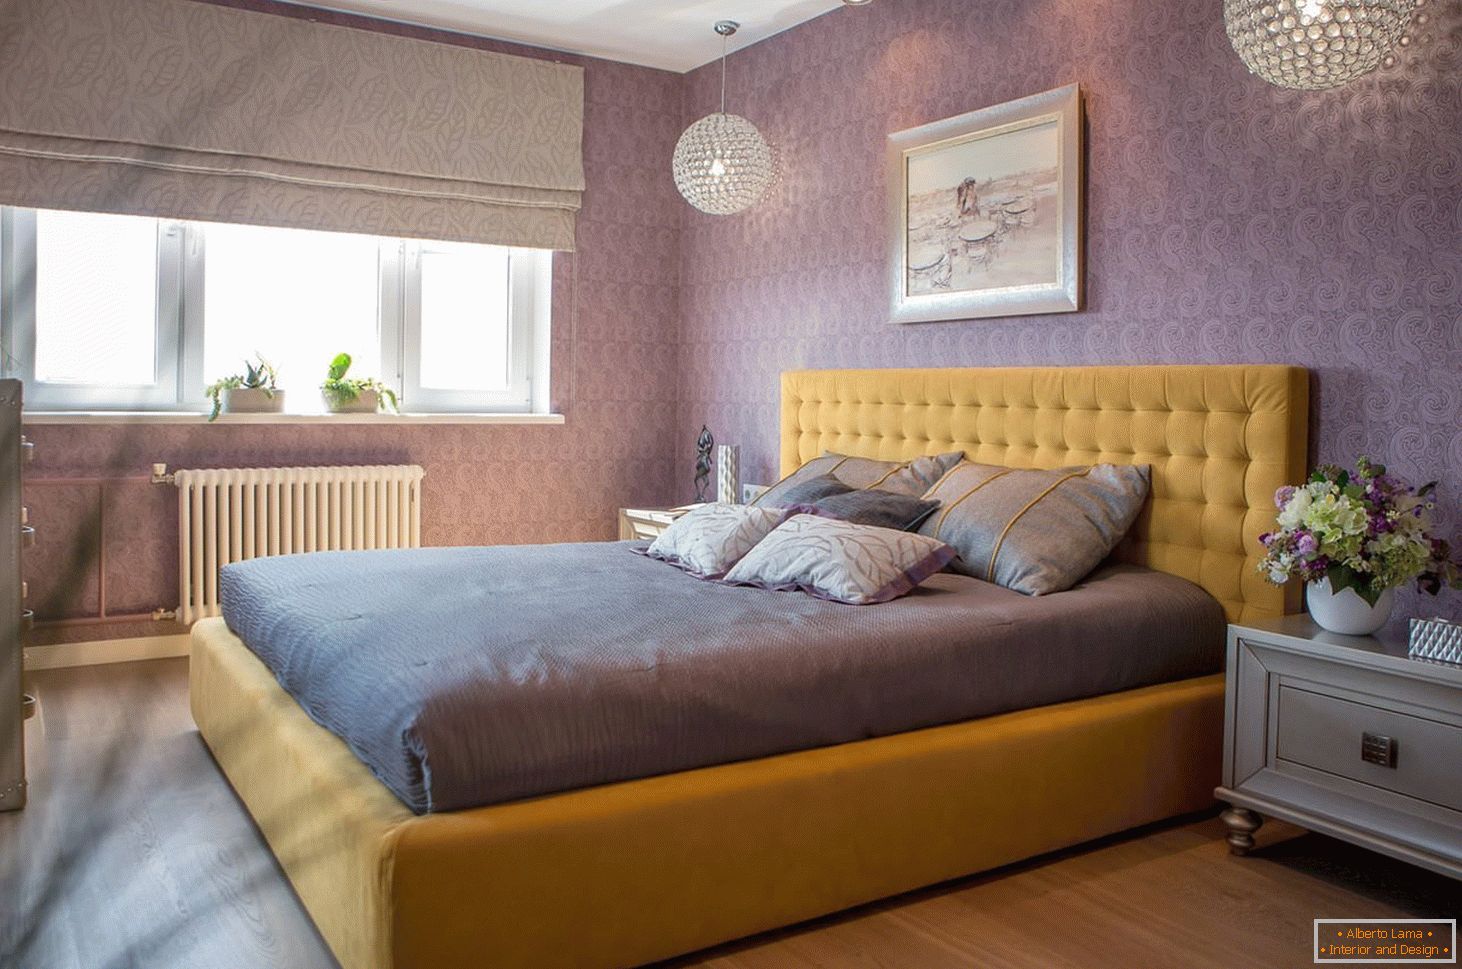 Žlutá postel v purpurovém interiéru